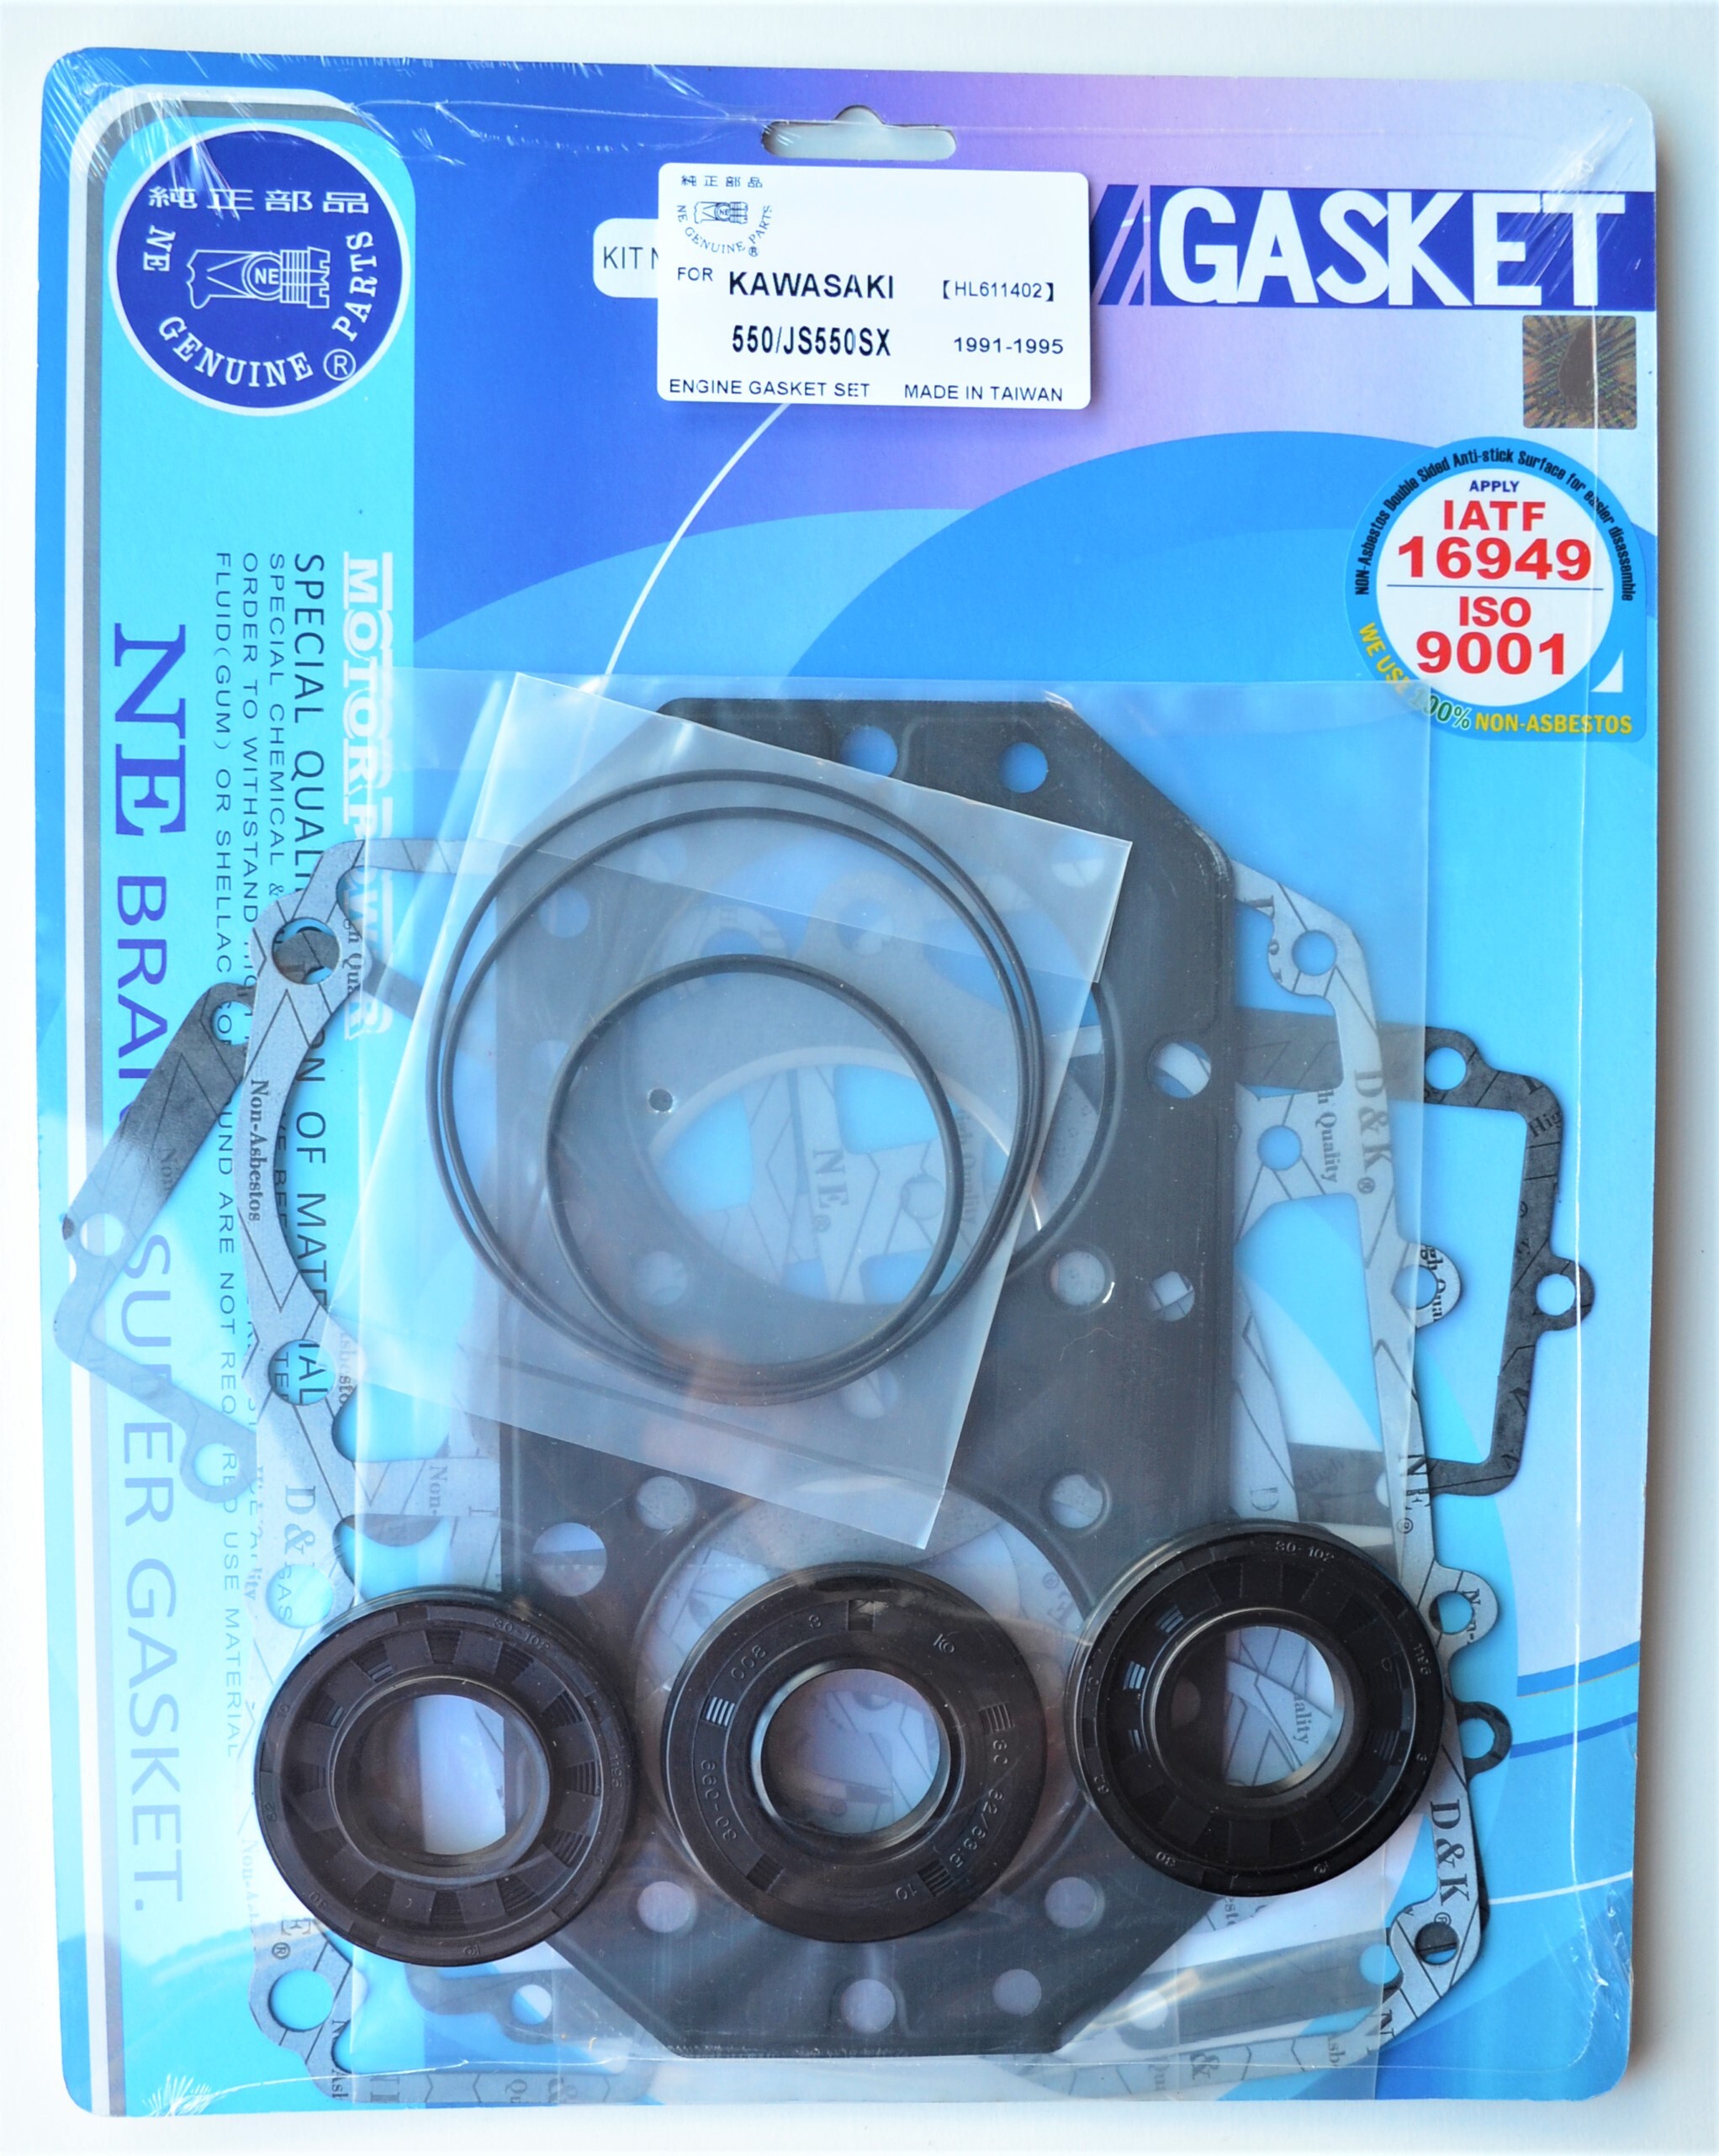 COMPLETE GASKET & SEAL KIT FOR KAWASAKI JS550 1991 - 1995 # 611402/48-202B